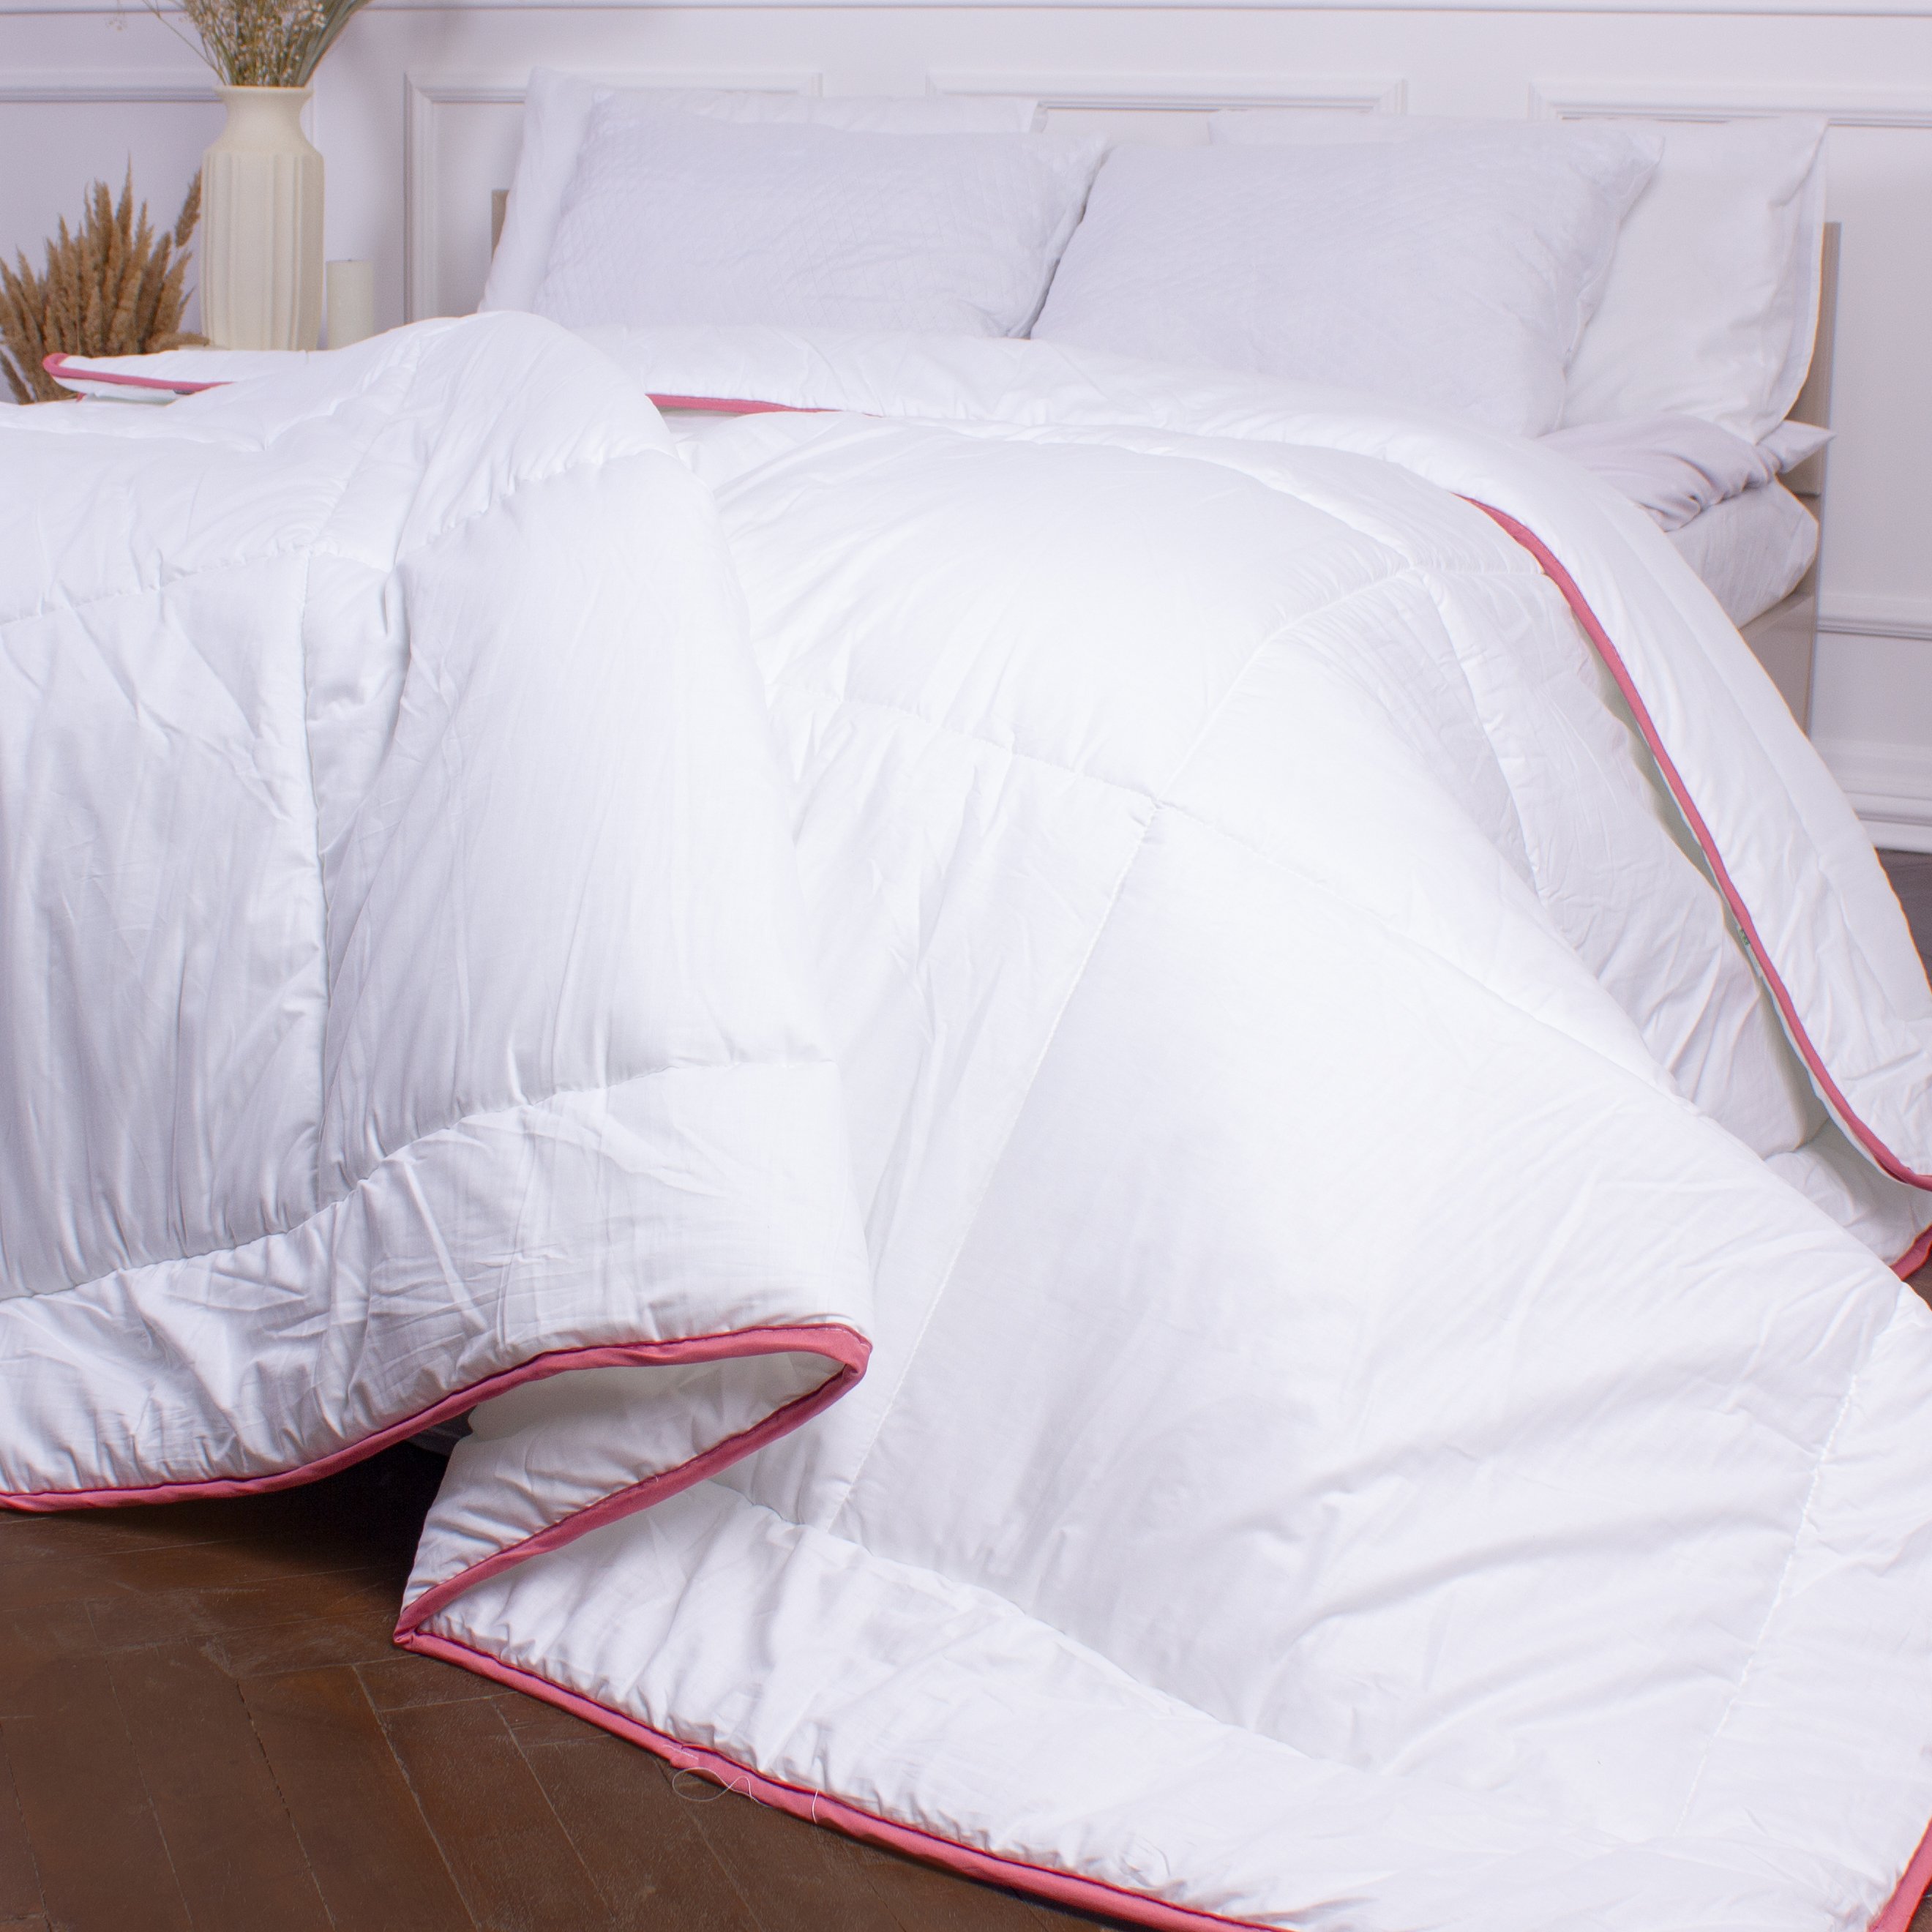 Одеяло шерстяное MirSon DeLuxe №030, зимнее, 200x220 см, белое - фото 4